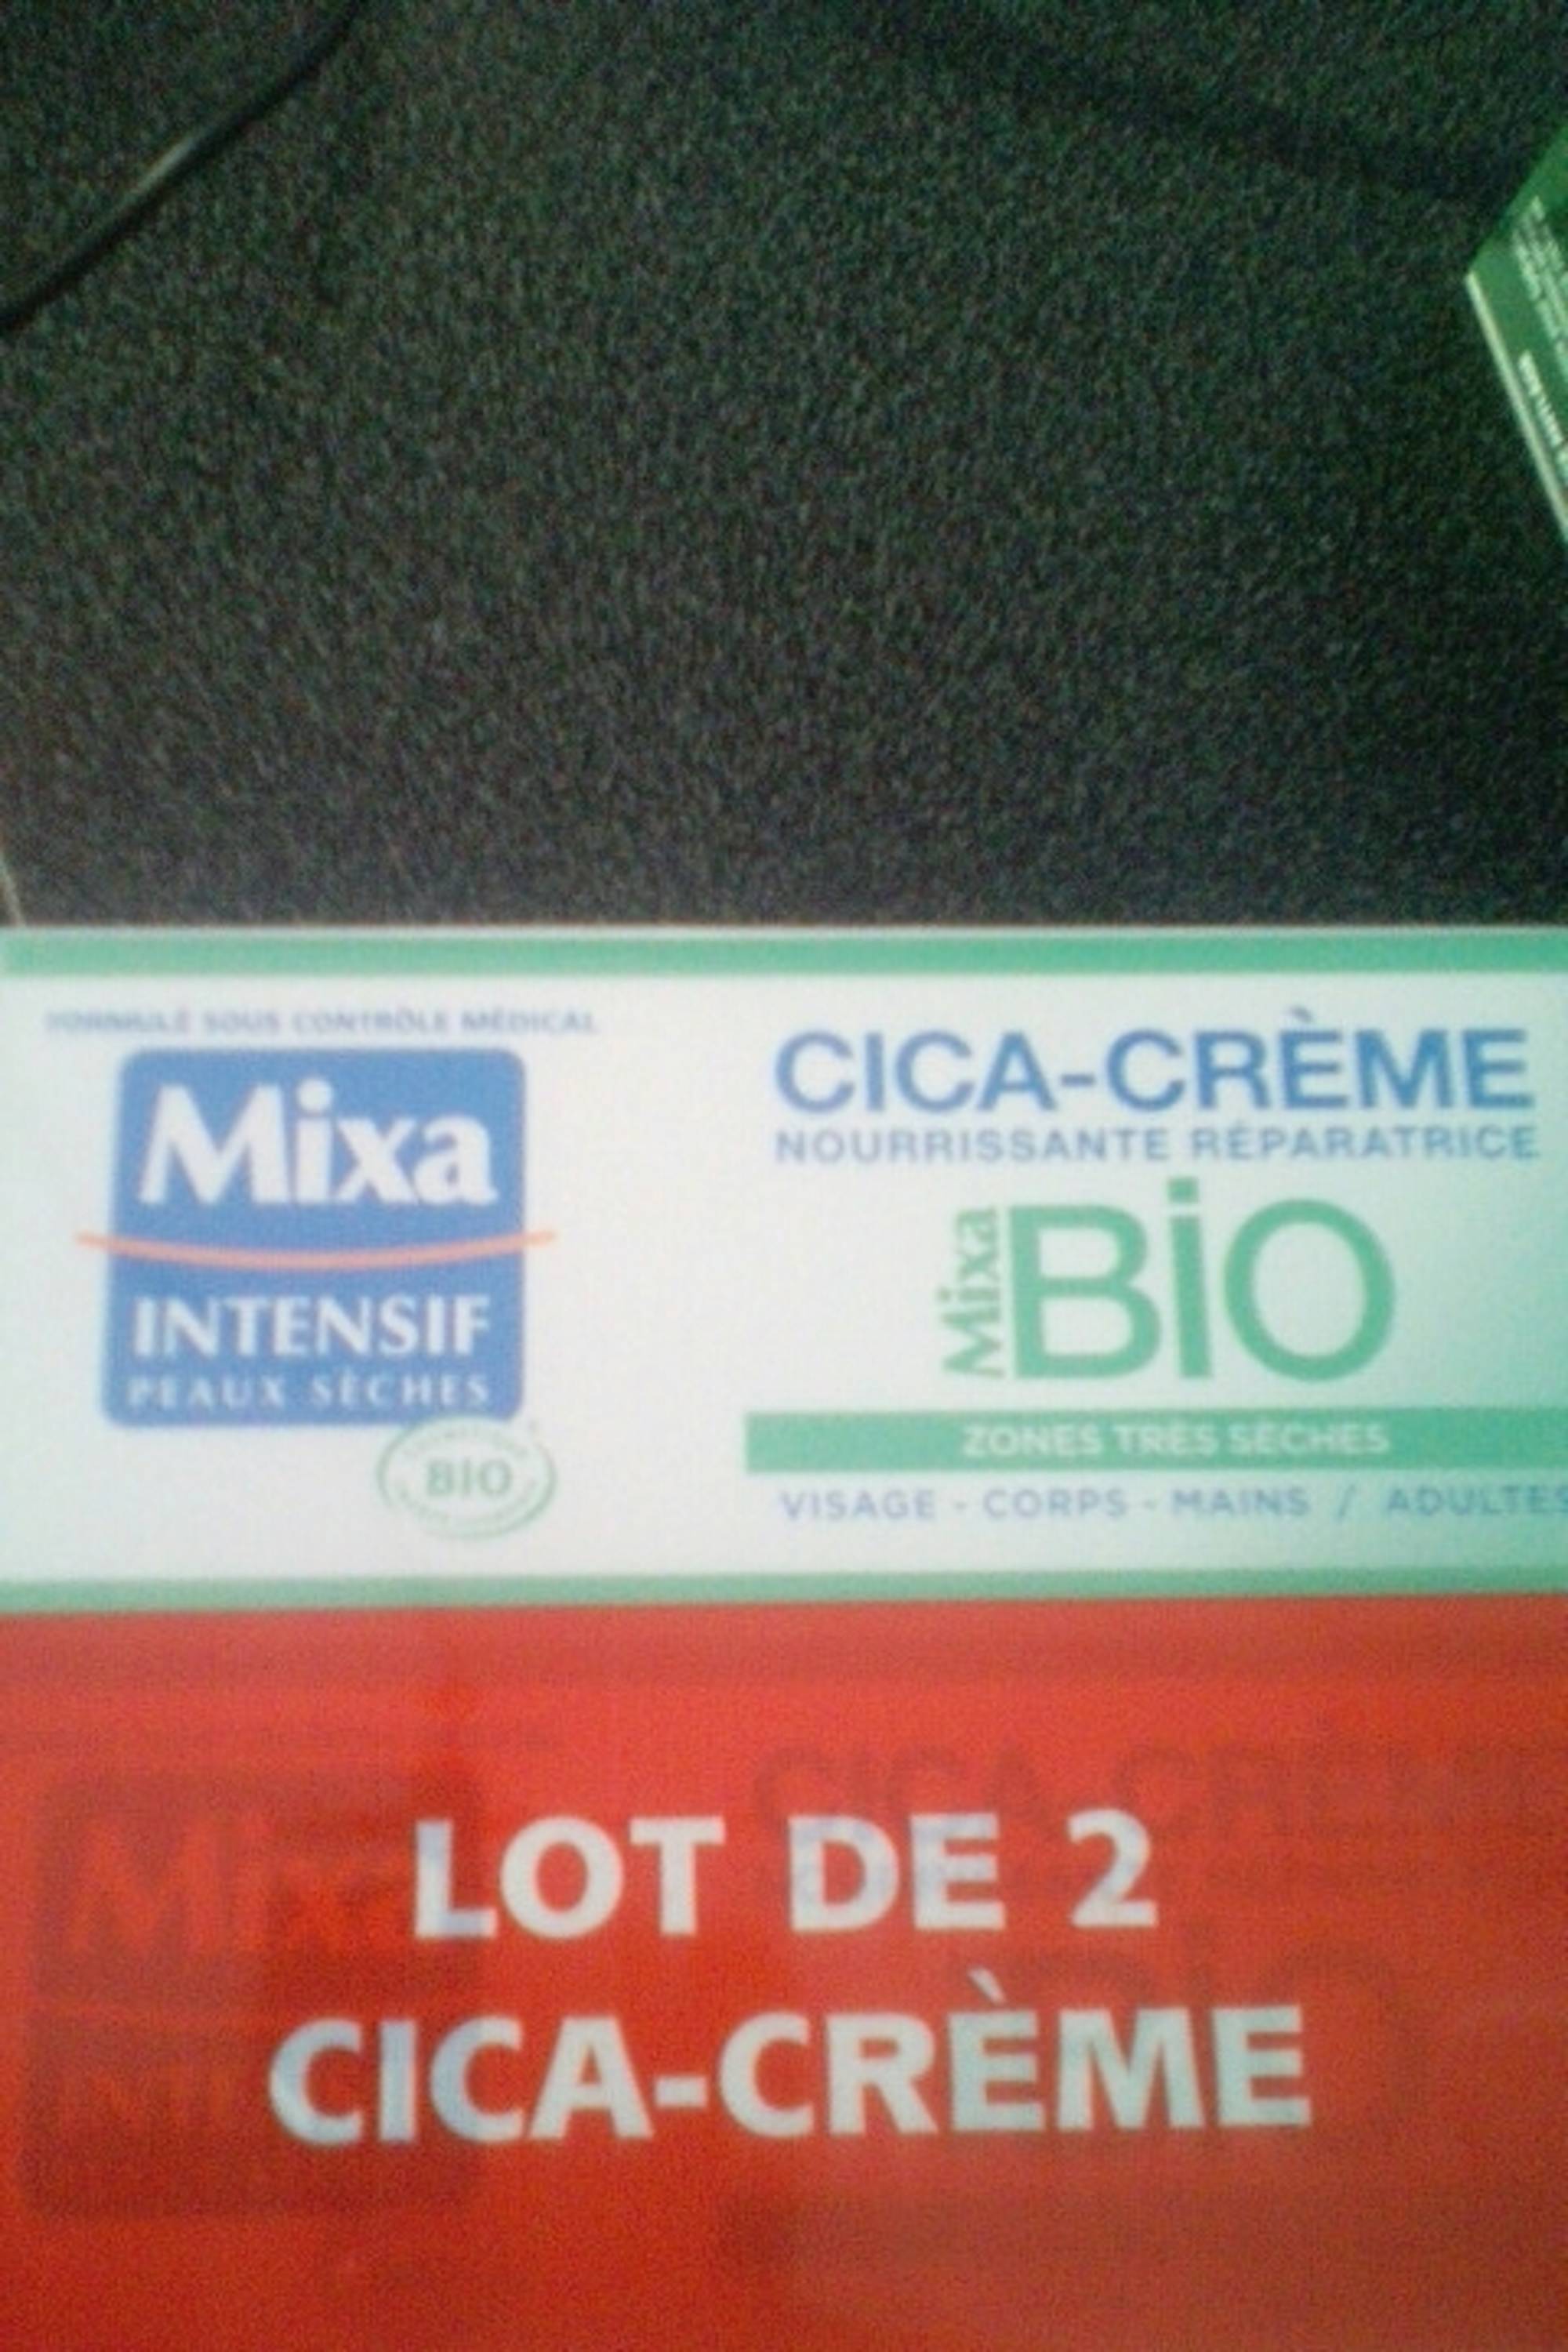 MIXA - Bio intensif peaux sèches - Cica-crème nourrissante réparatrice